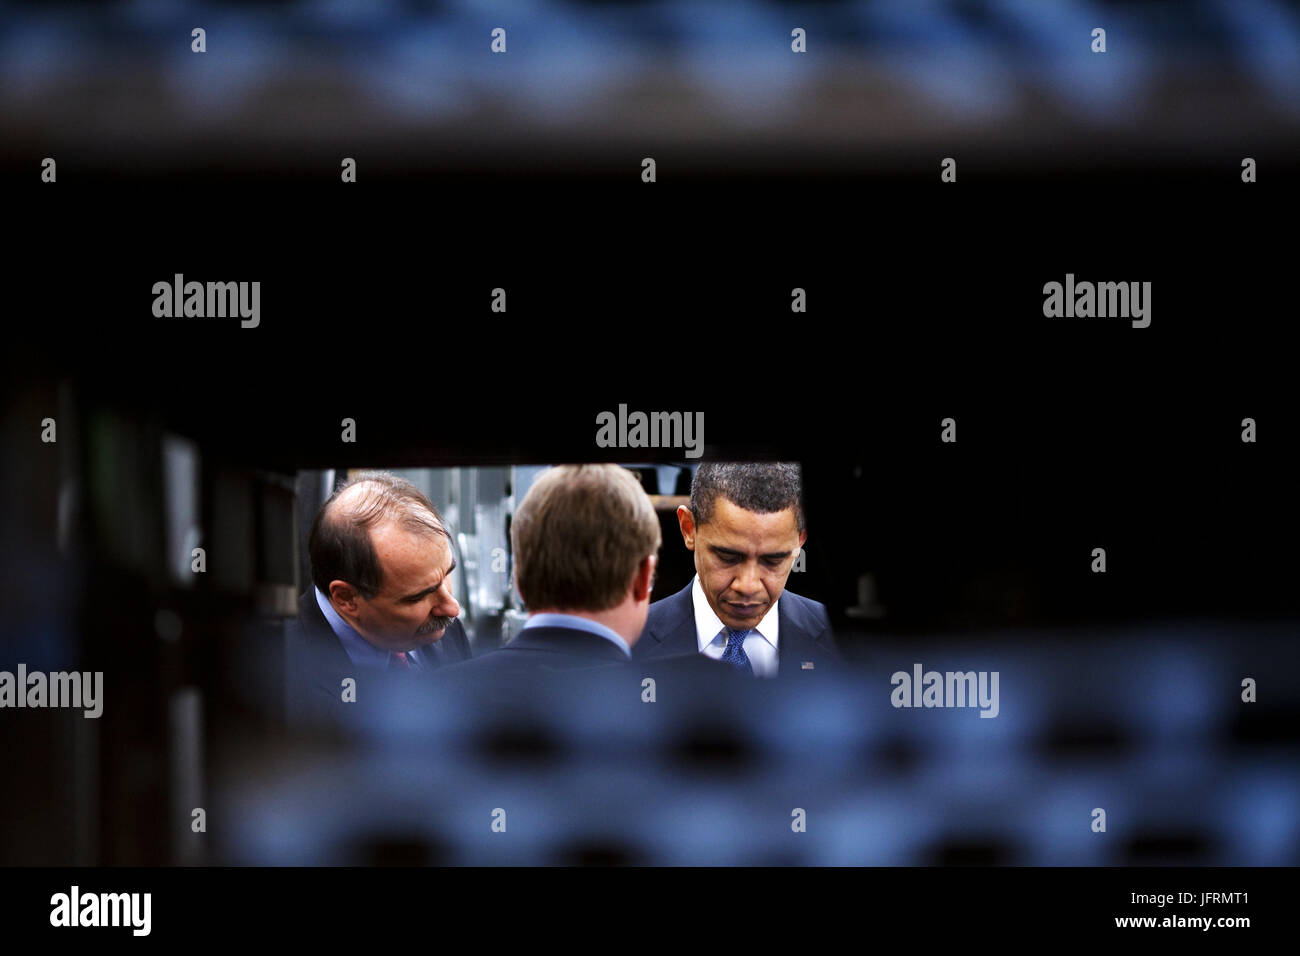 Le président Barack Obama vérifie son BlackBerry tout en conférant à l'Attaché de presse Robert Gibbs et Conseiller David Axelrod 2/12/09. Photo Officiel de la Maison Blanche par Pete Souza Banque D'Images